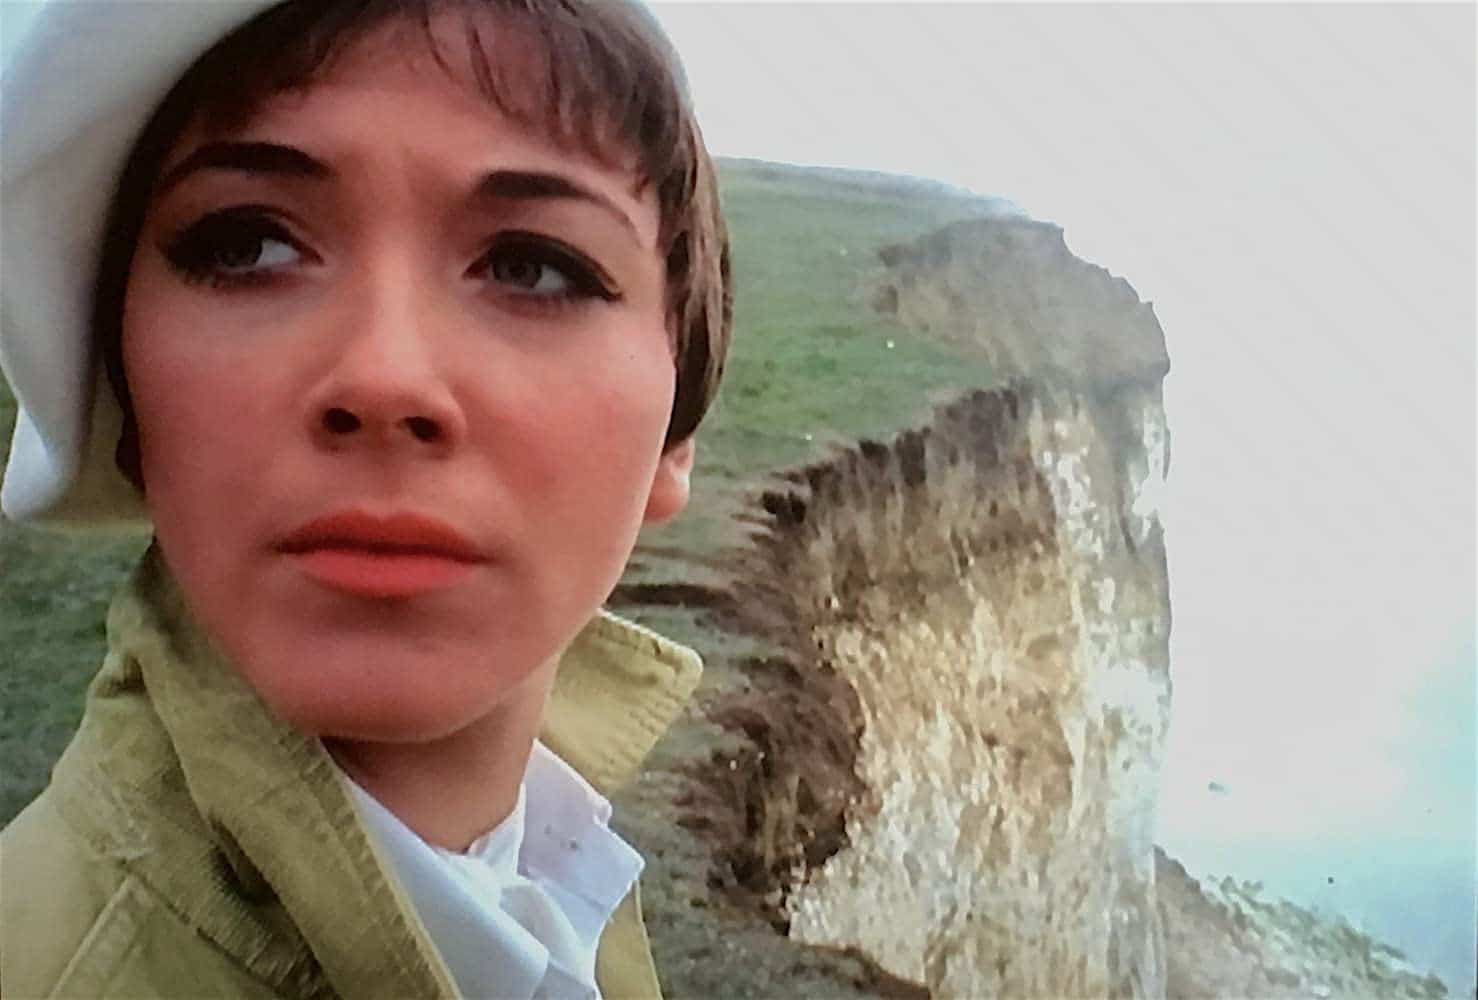 Tara King near a cliff edge